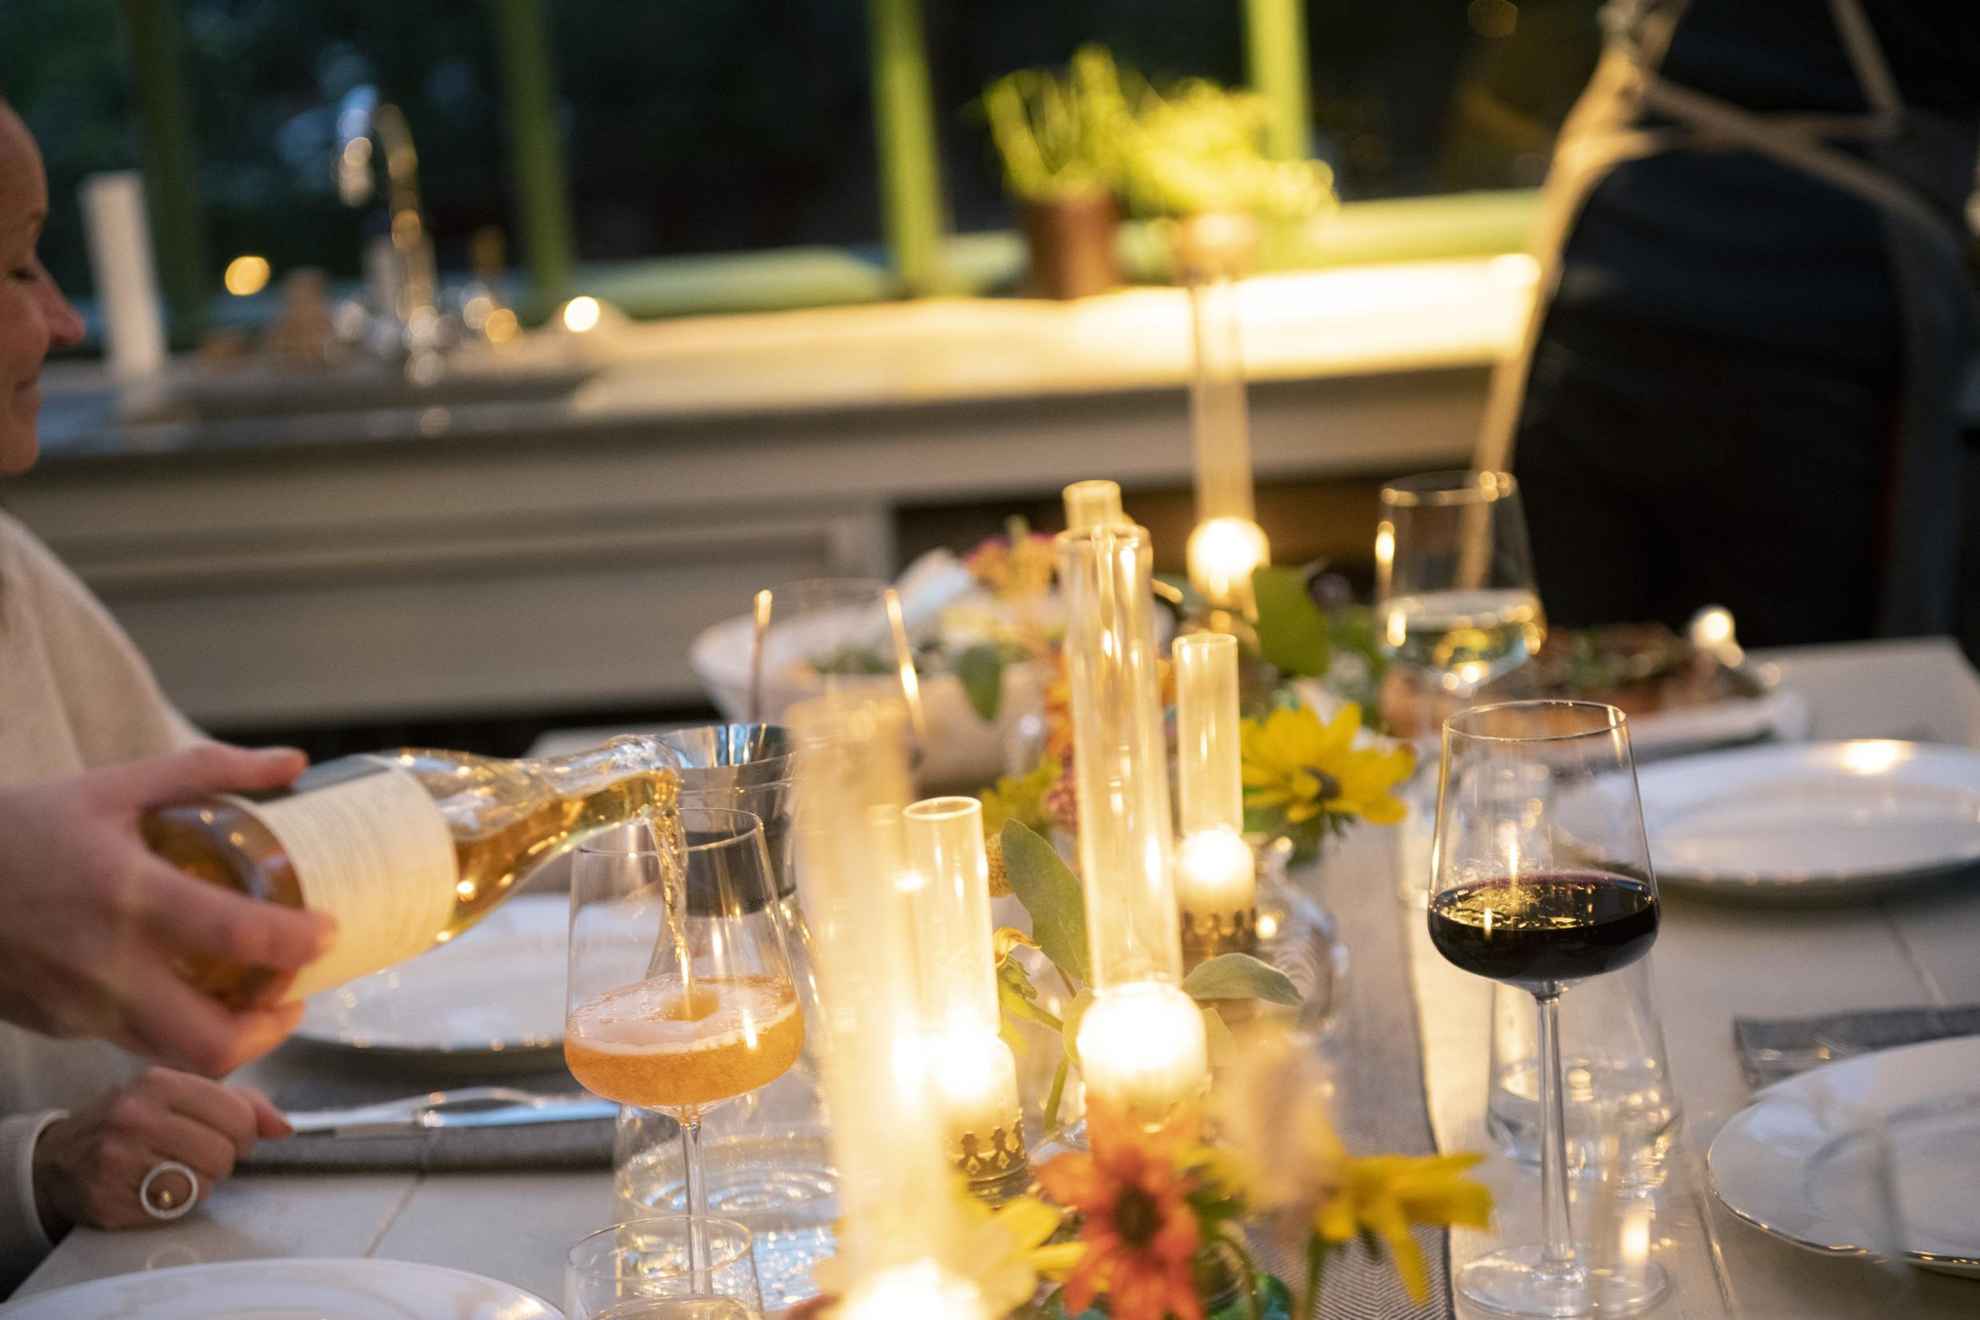 Ein Esstisch mit Gläsern, Besteck, Tellern, Blumen und brennenden Kerzen. Eine Person schenkt ein Getränk in ein Glas ein.